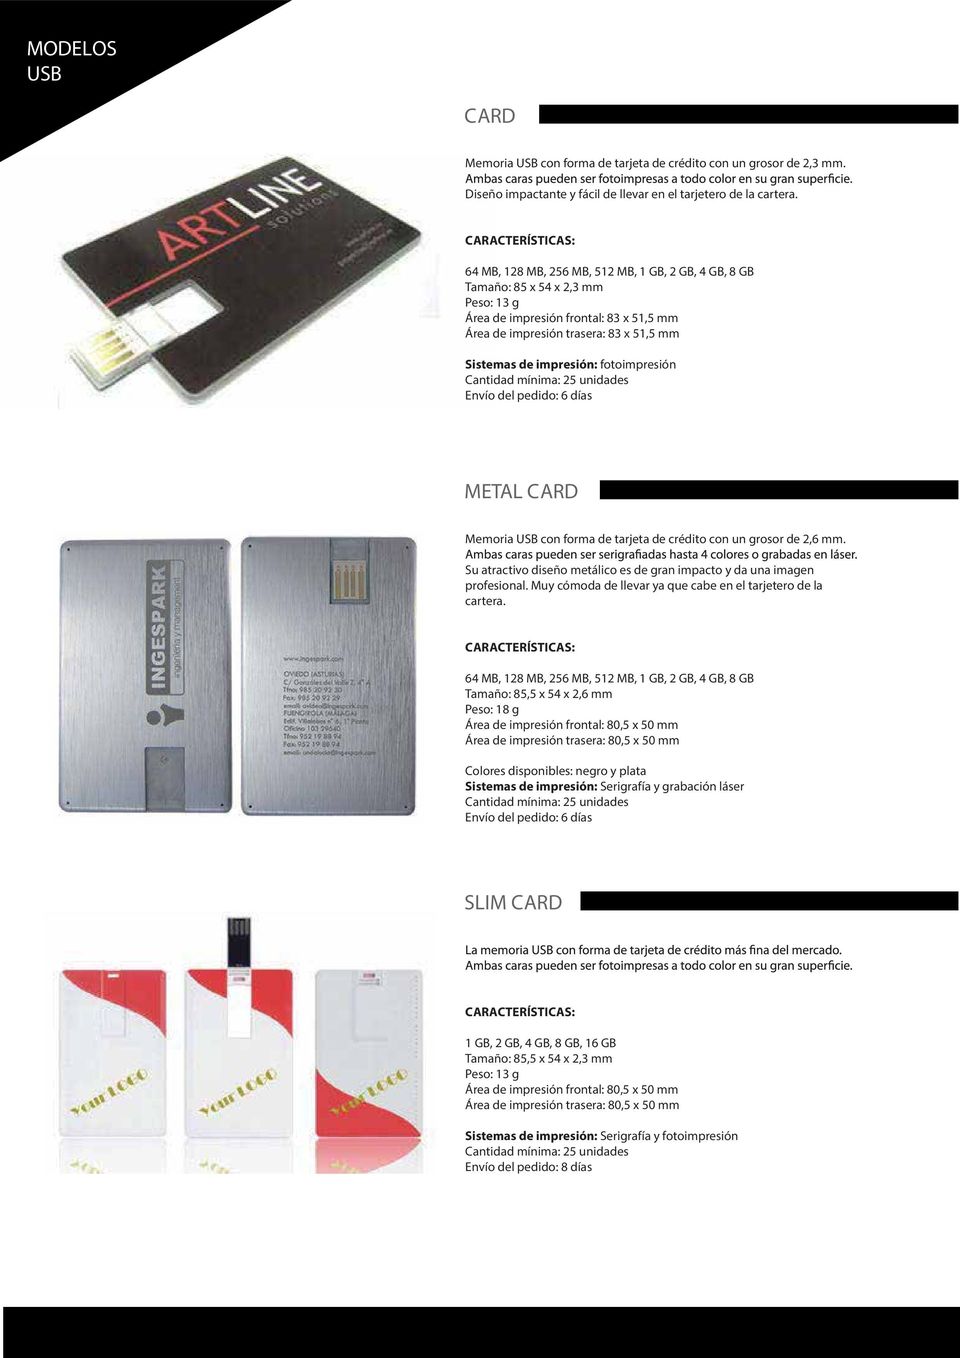 fotoimpresión Envío del pedido: 6 días METAL CARD Memoria con forma de tarjeta de crédito con un grosor de 2,6 mm. Su atractivo diseño metálico es de gran impacto y da una imagen profesional.